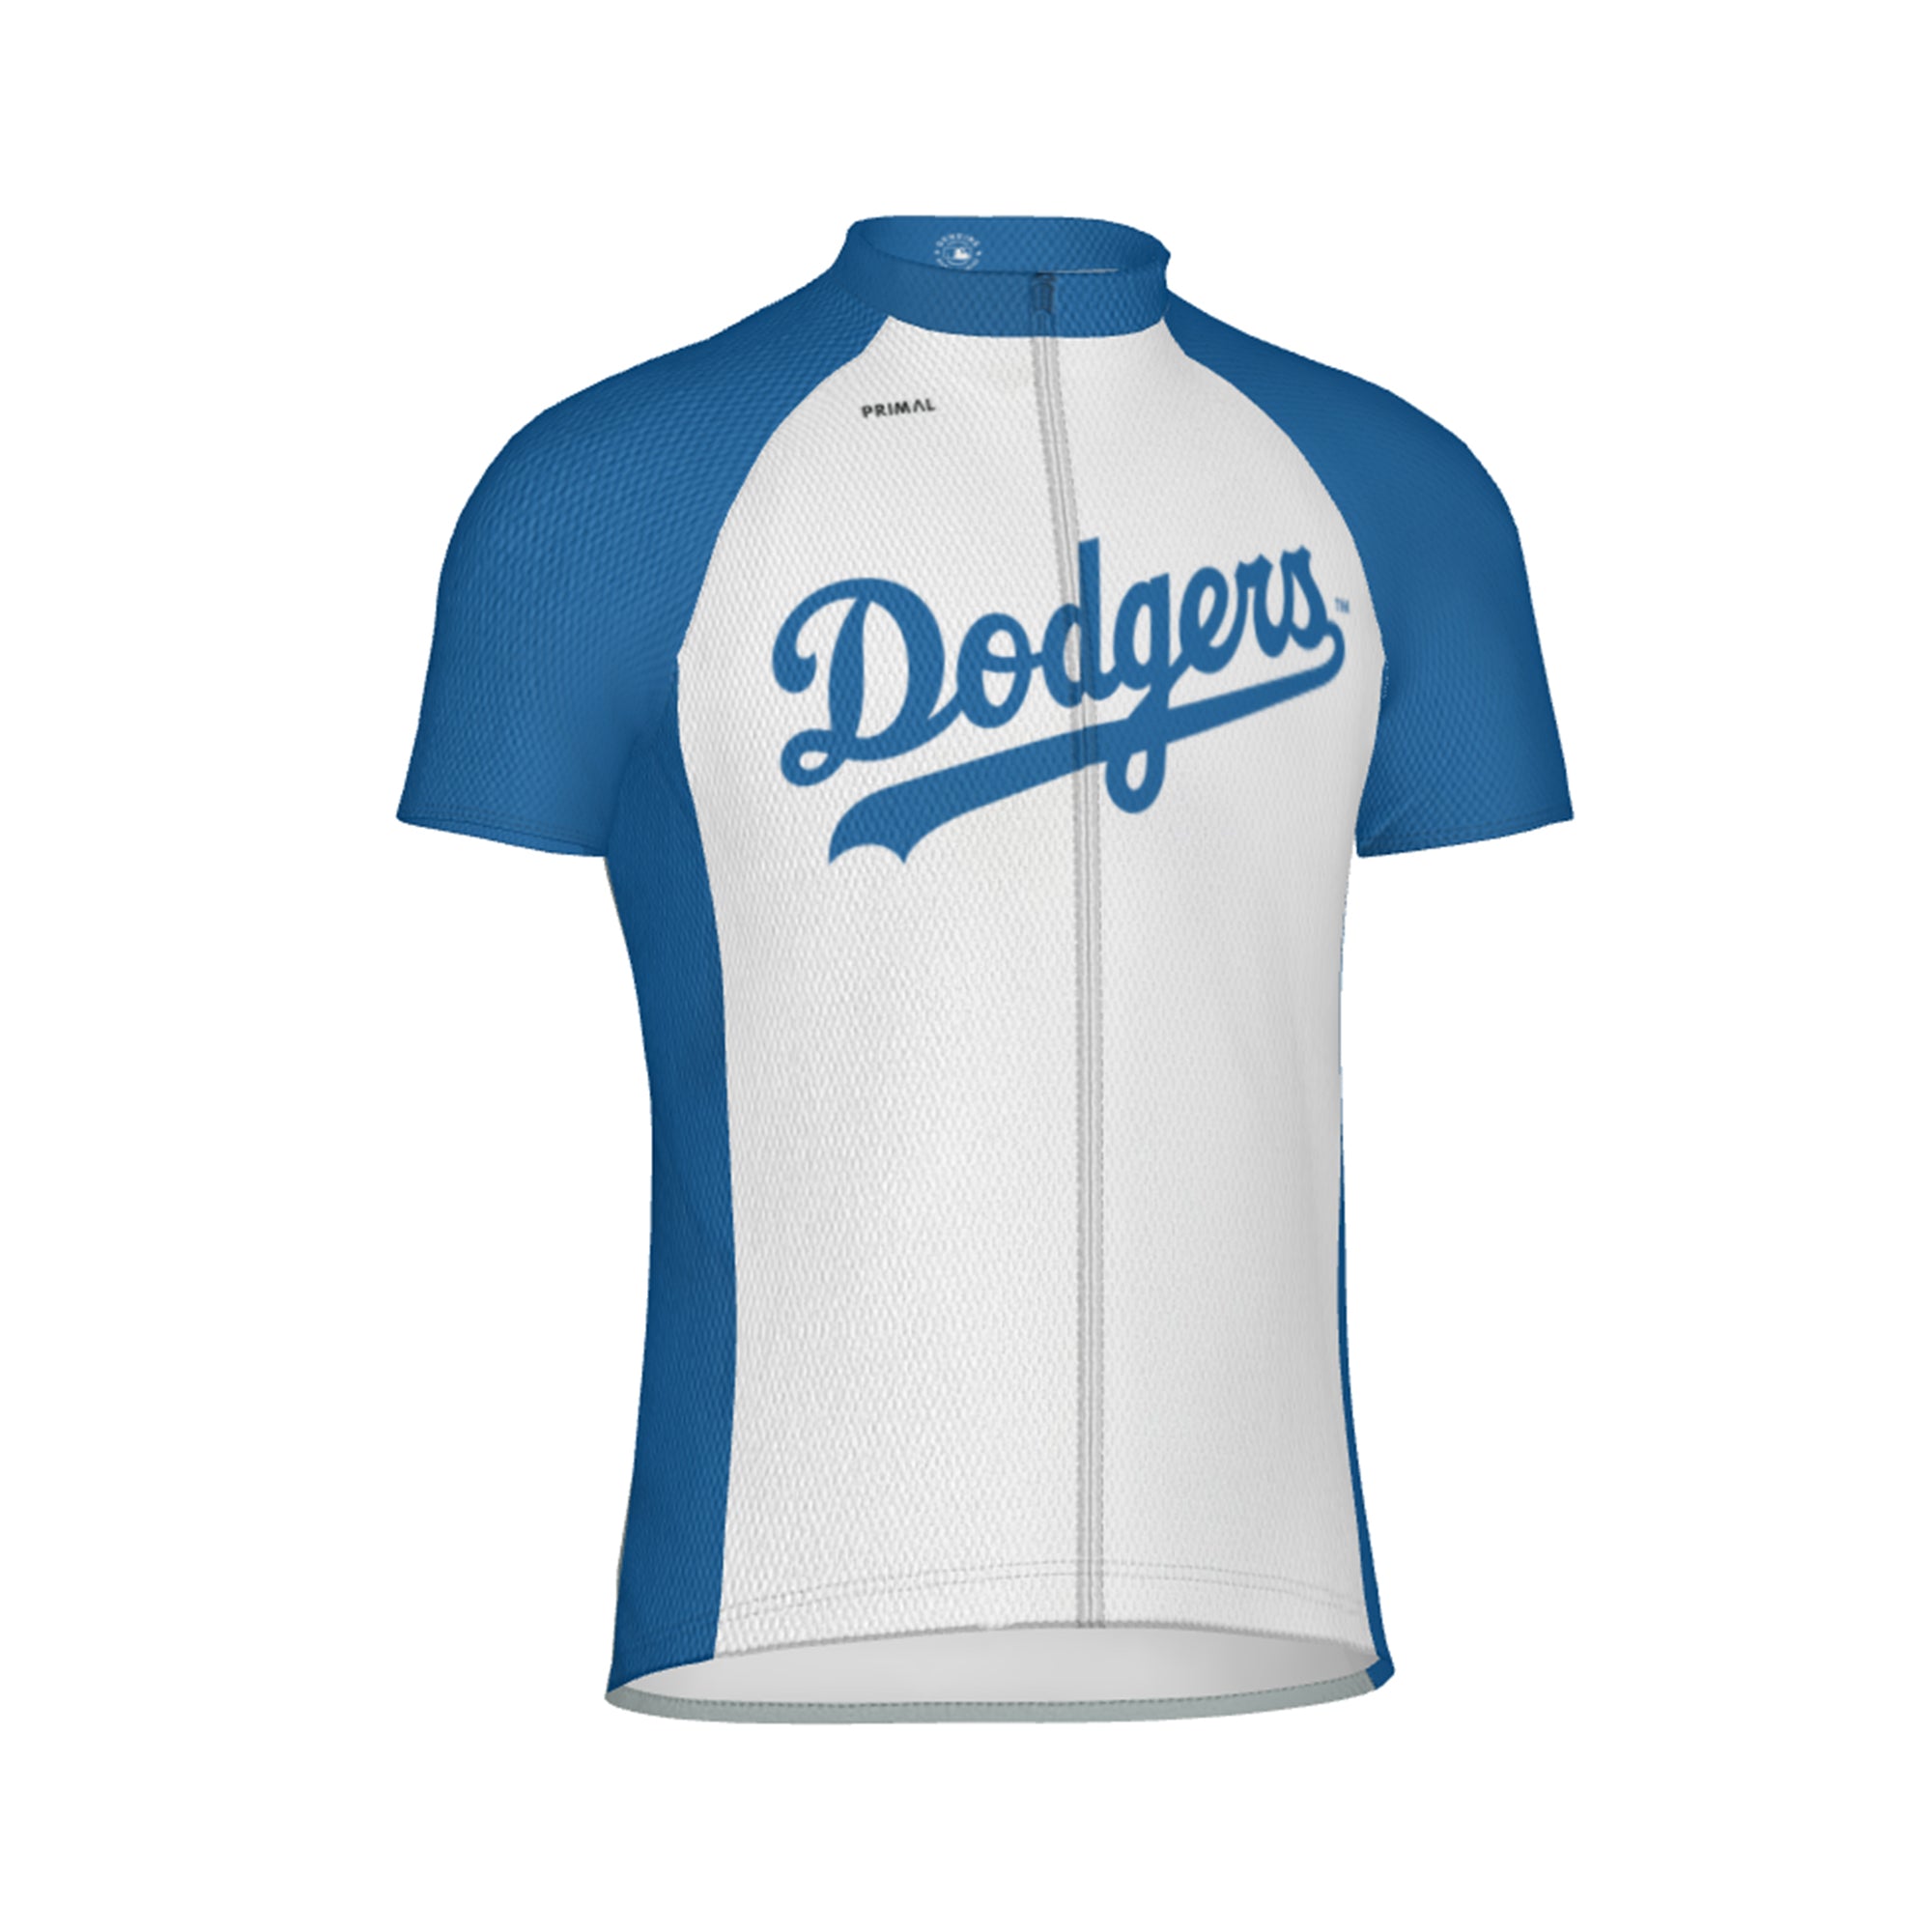 L.A. Dodgers Jerseys, Dodgers Baseball Jersey, Uniforms